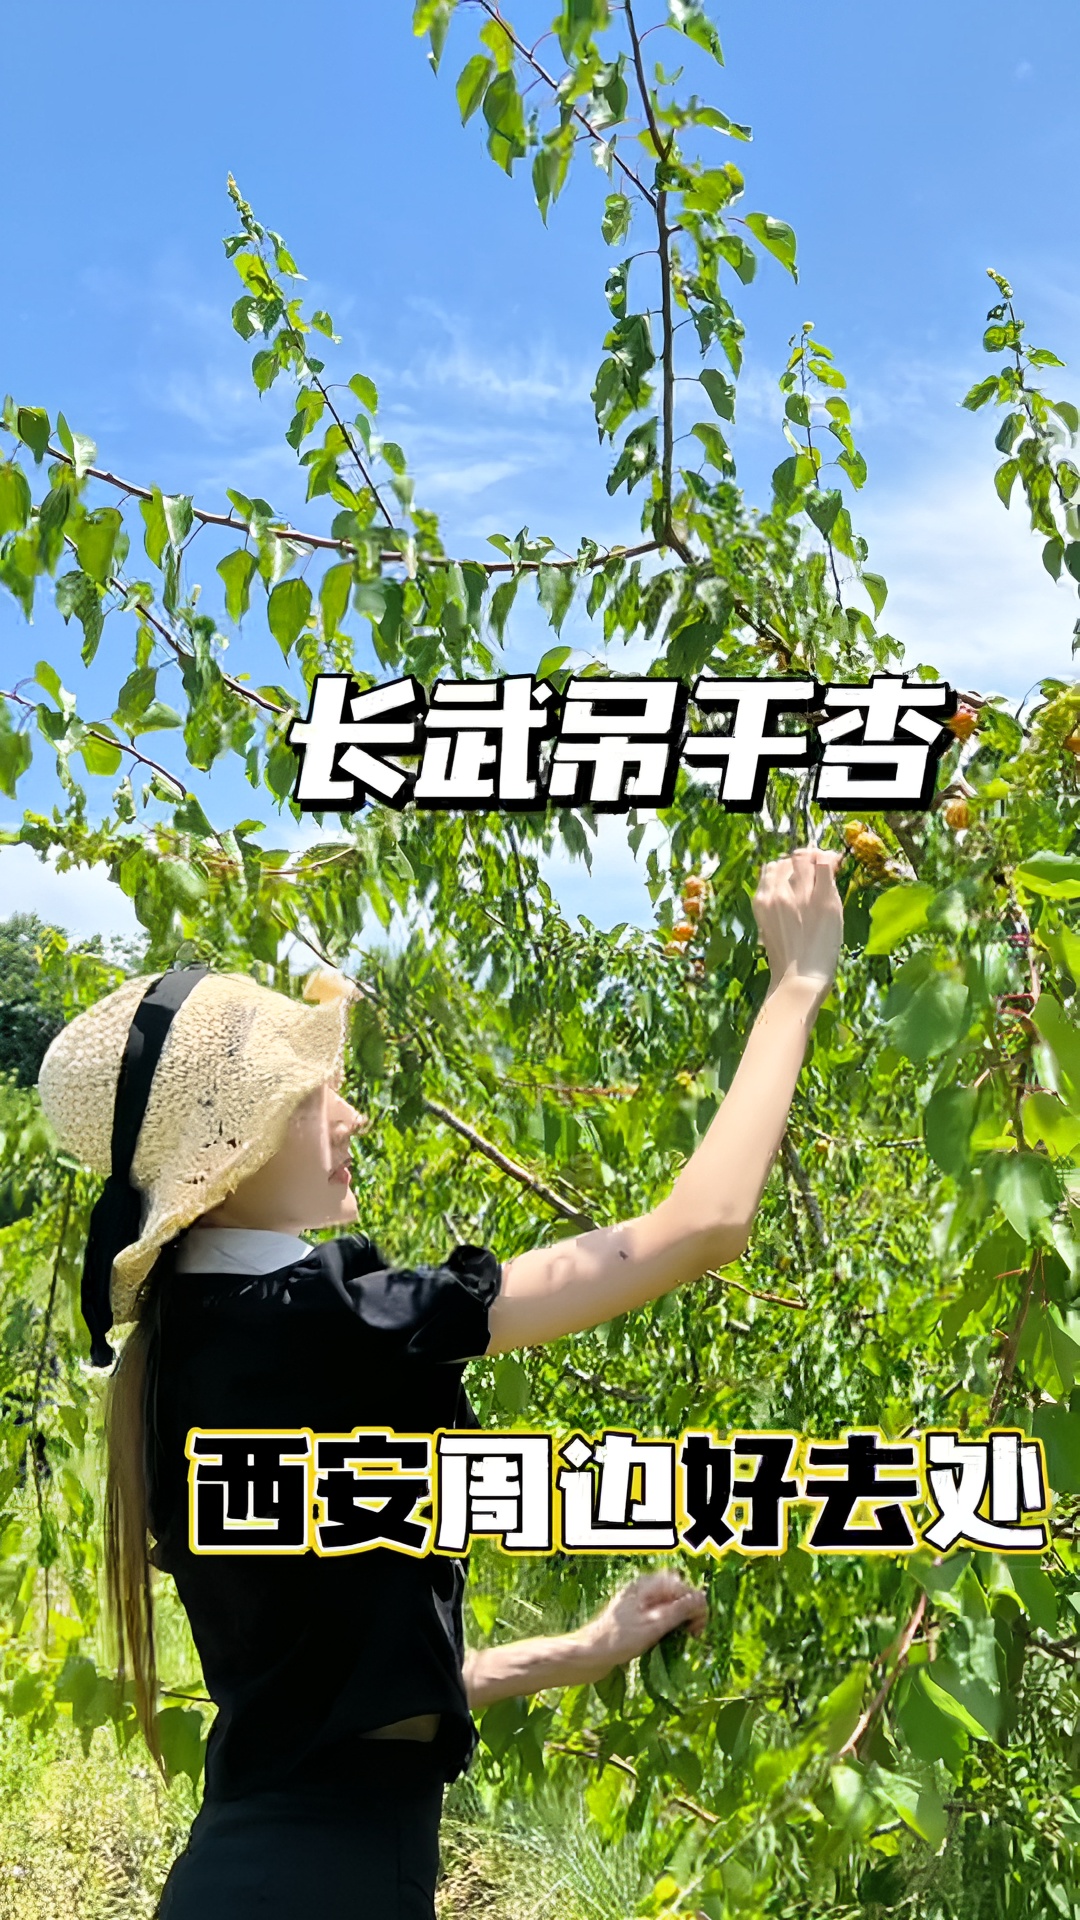 这个夏天怎么能少的了长武的吊干杏呢？